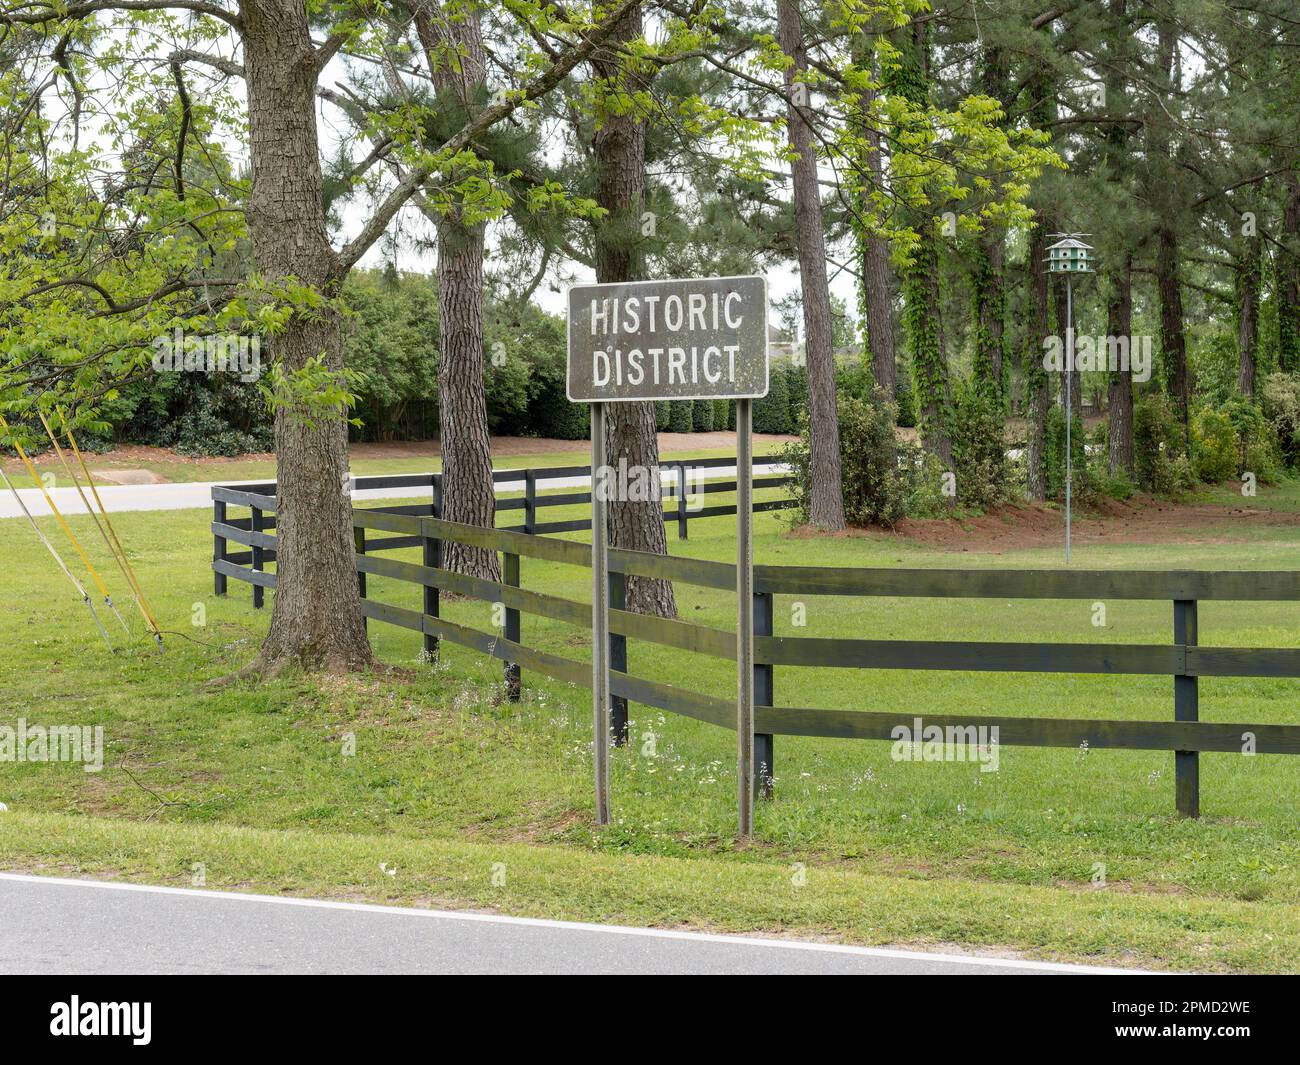 Historischer Bezirk in der Gegend steht für eine historische Gegend einer ländlichen Gemeinde mit bekannter Geschichte in der Pike Road, Alabama, USA. Stockfoto